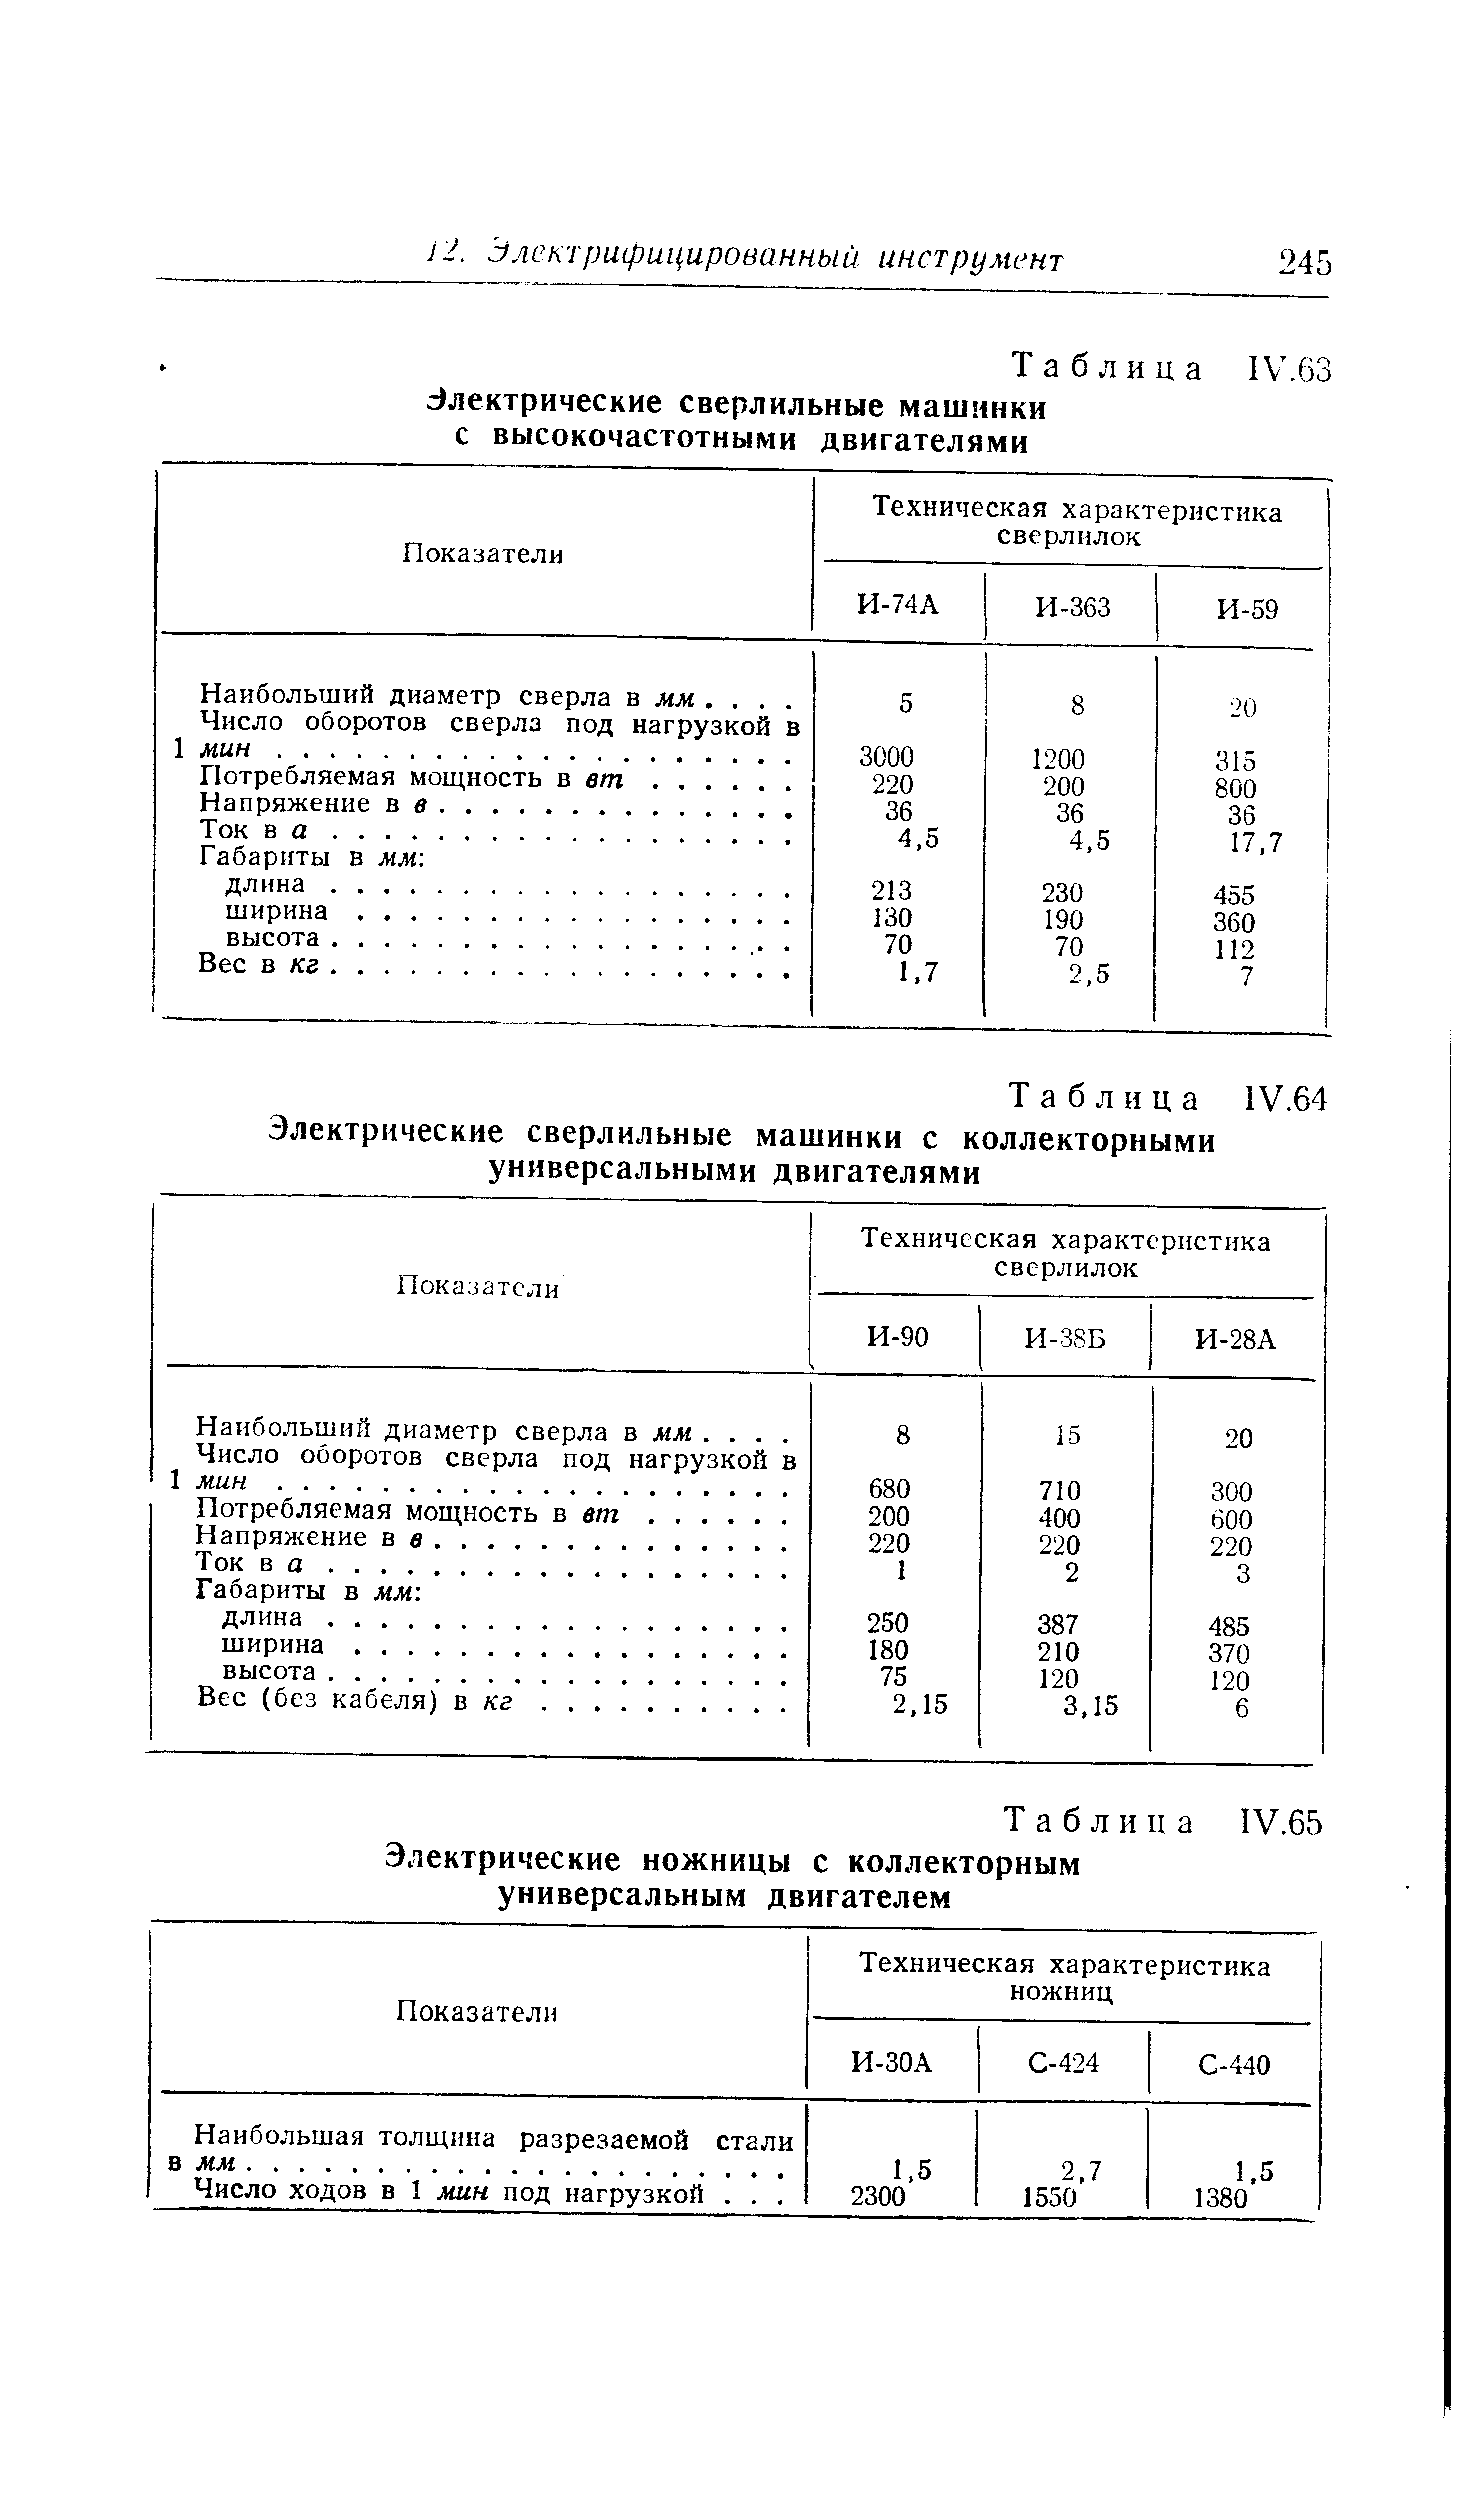 Таблица 1У.64 Электрические сверлильные машинки с коллекторными универсальными двигателями
